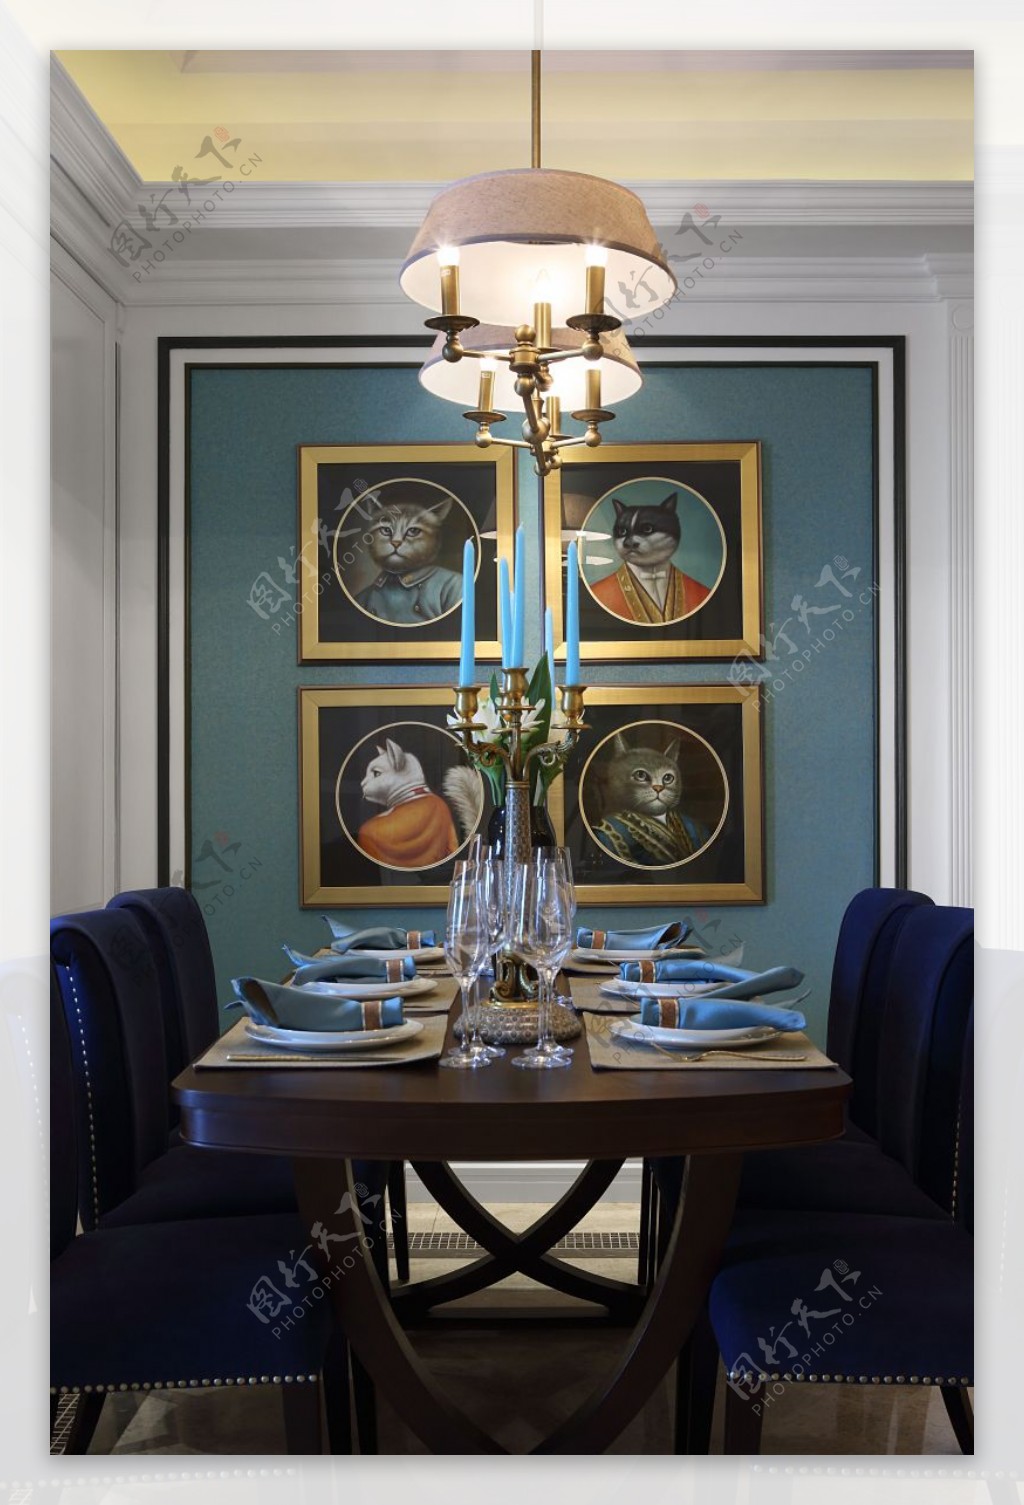 简约风室内设计餐厅蓝色餐桌凳效果图